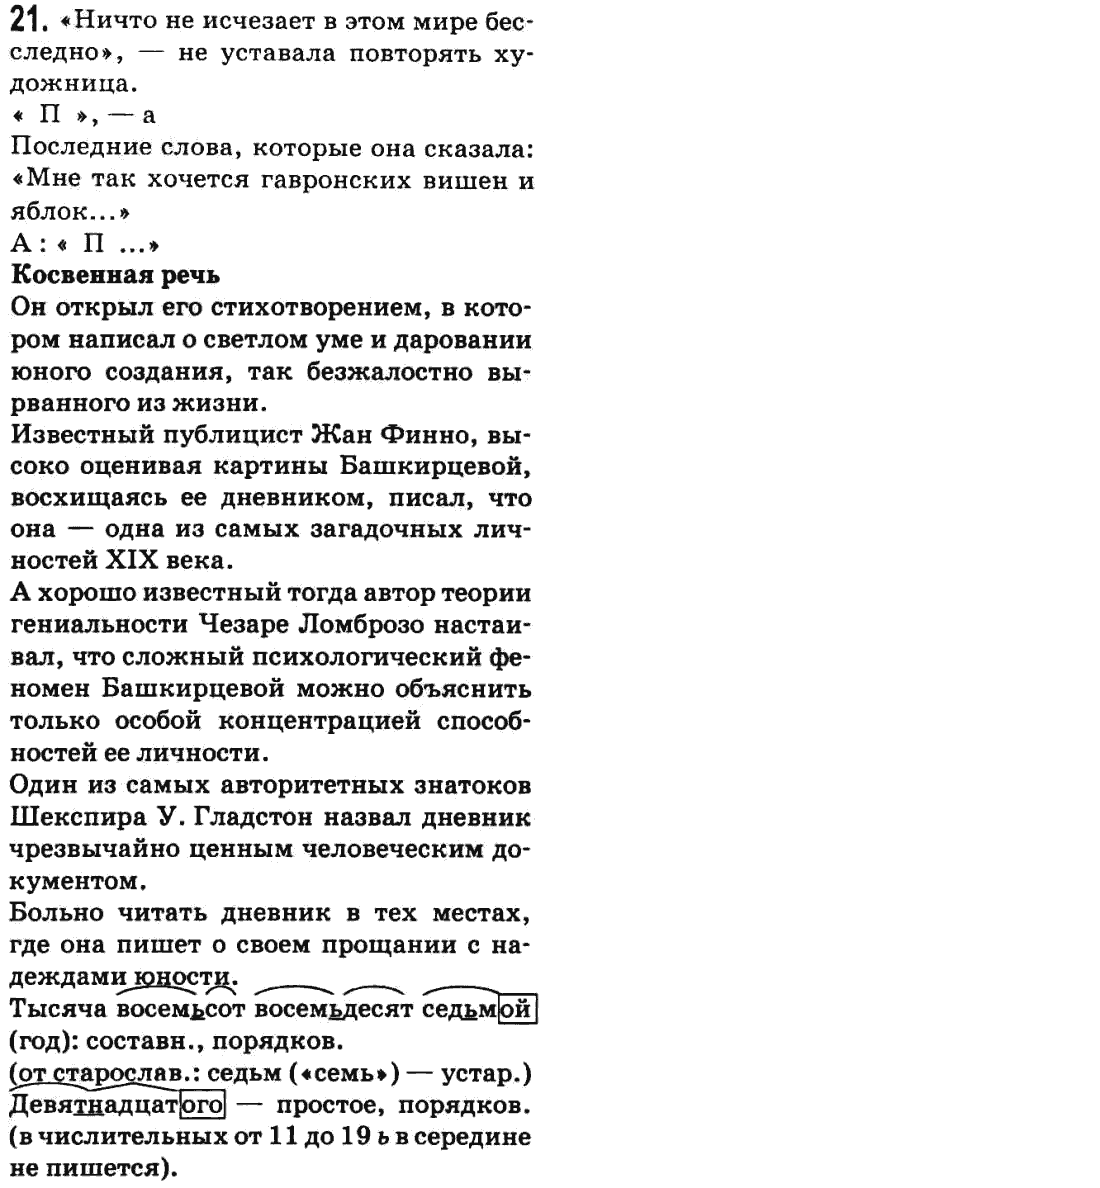 Русский язык 9 класс Баландина Н.Ф., Дегтярева К.В. Задание 21